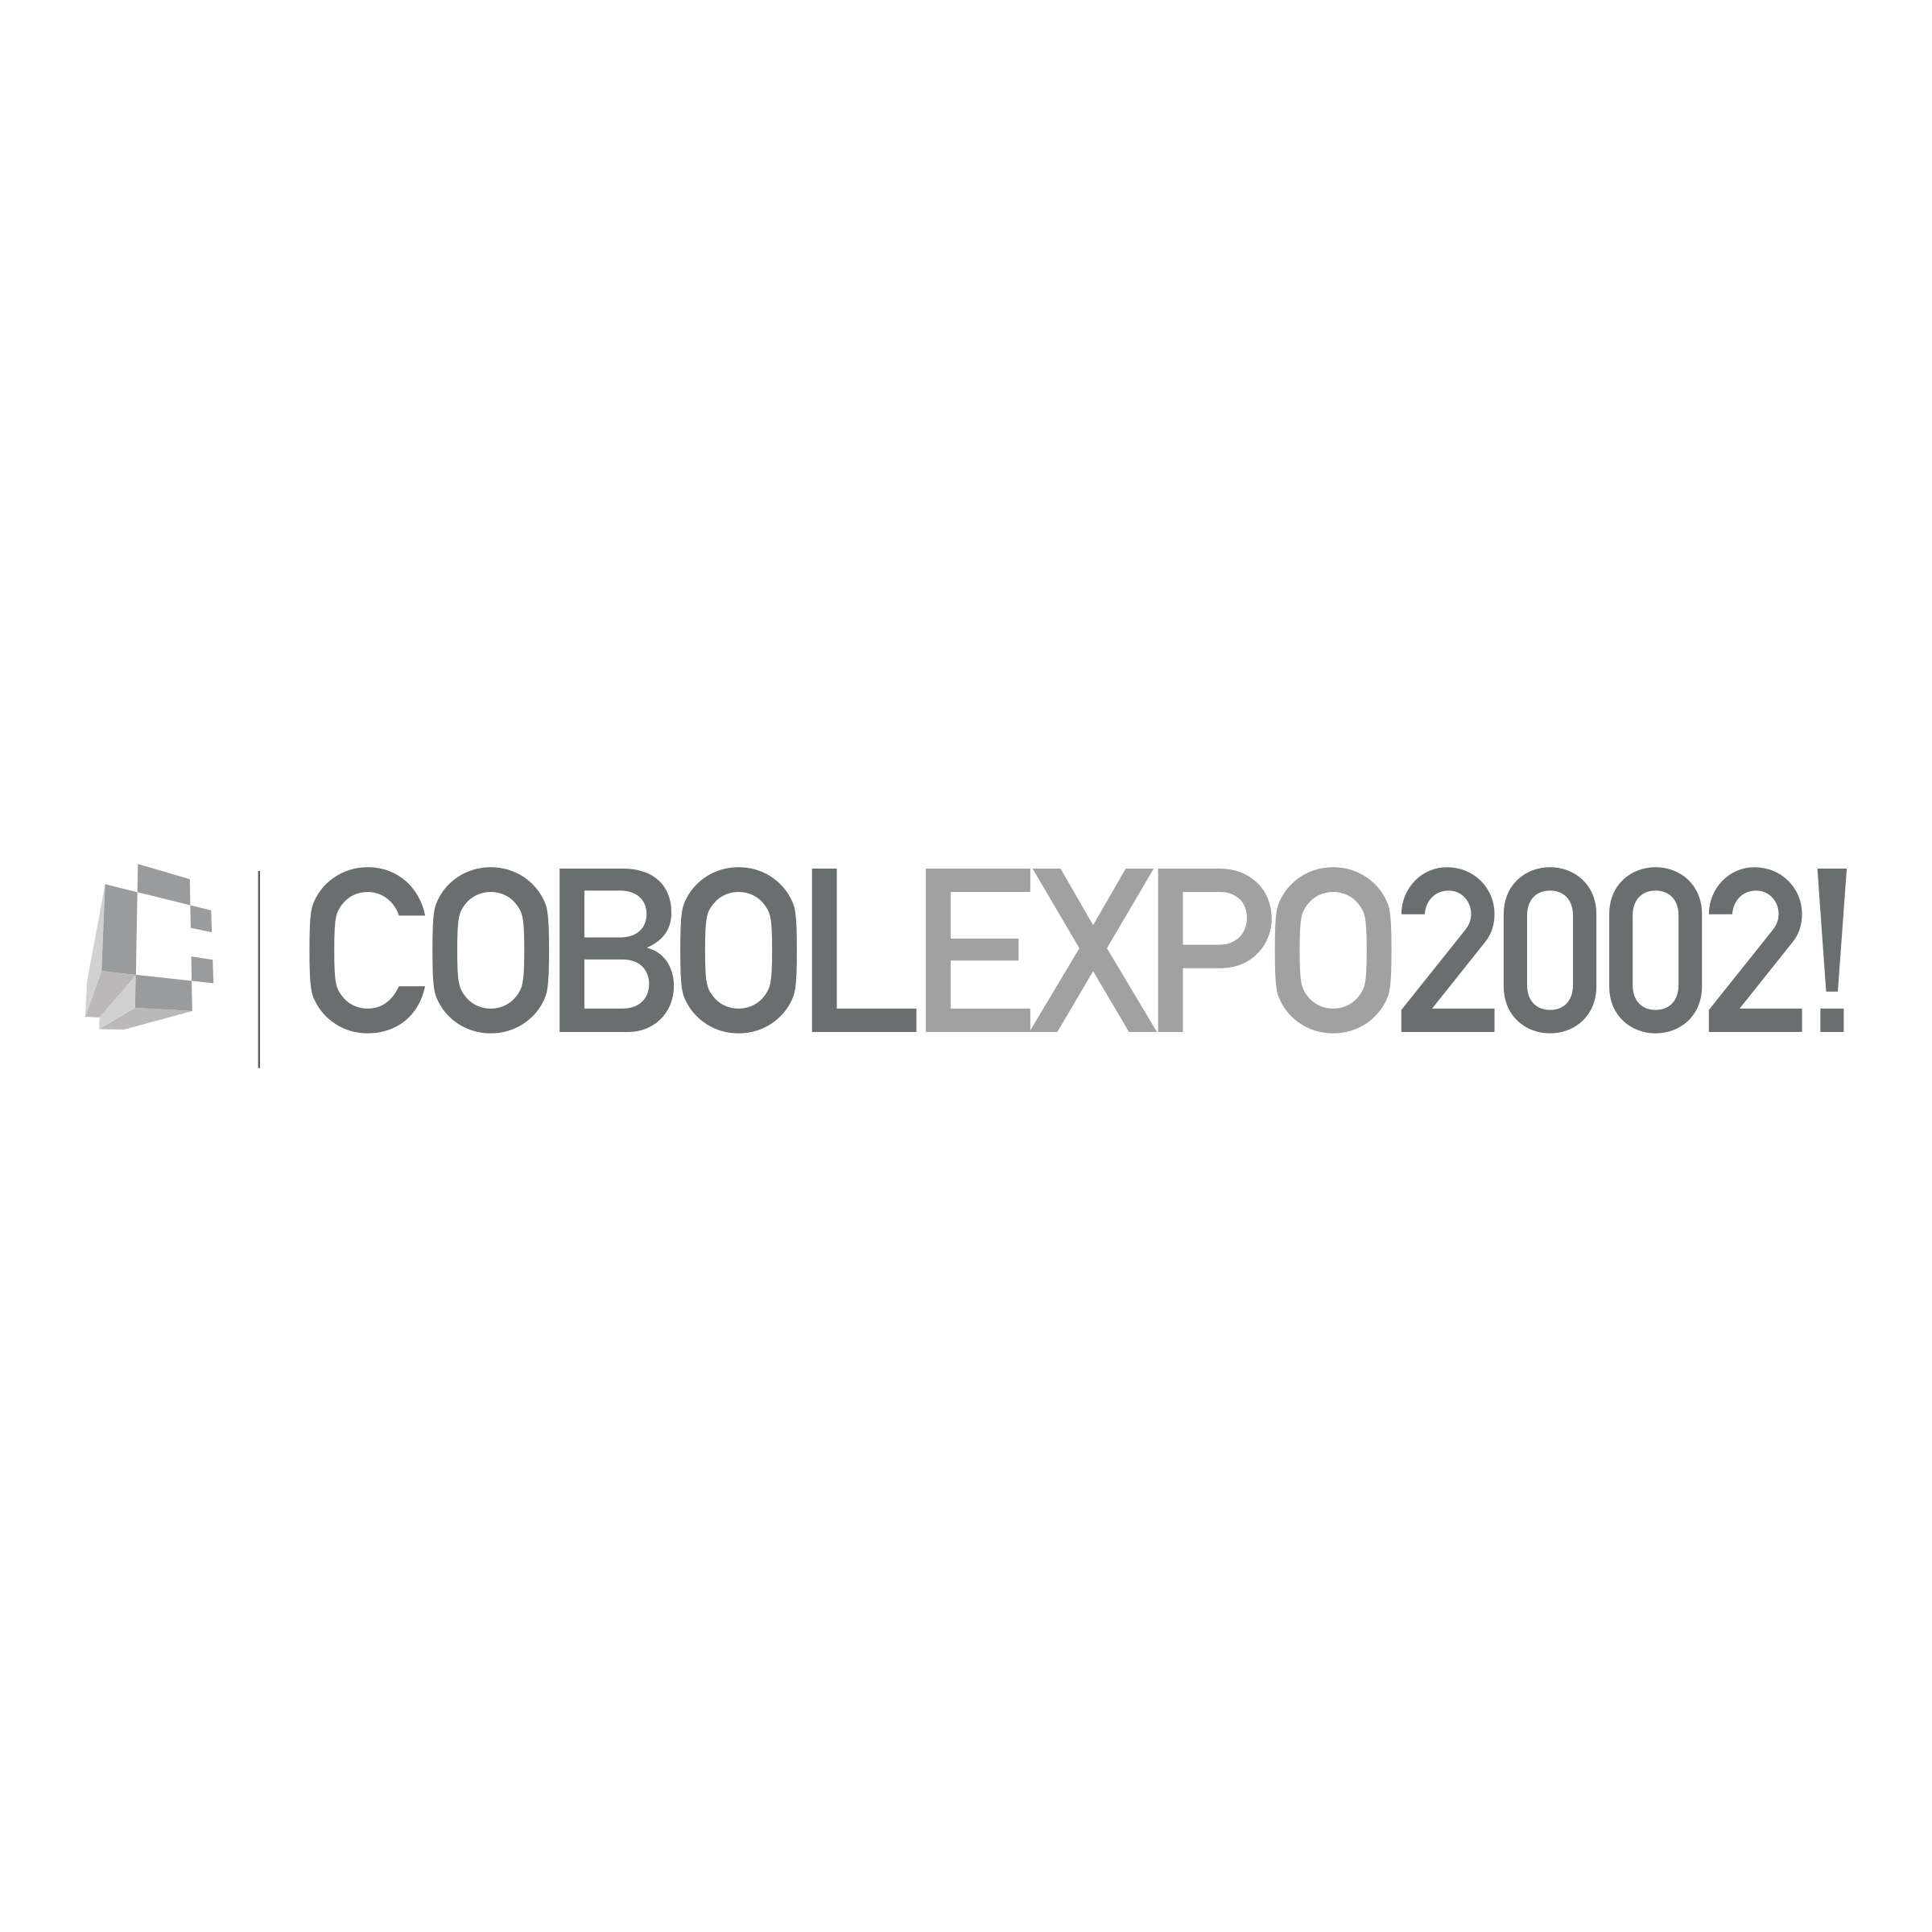 COBOL Logo - Cobol Expo 2002 Logo PNG Transparent & SVG Vector - Freebie Supply